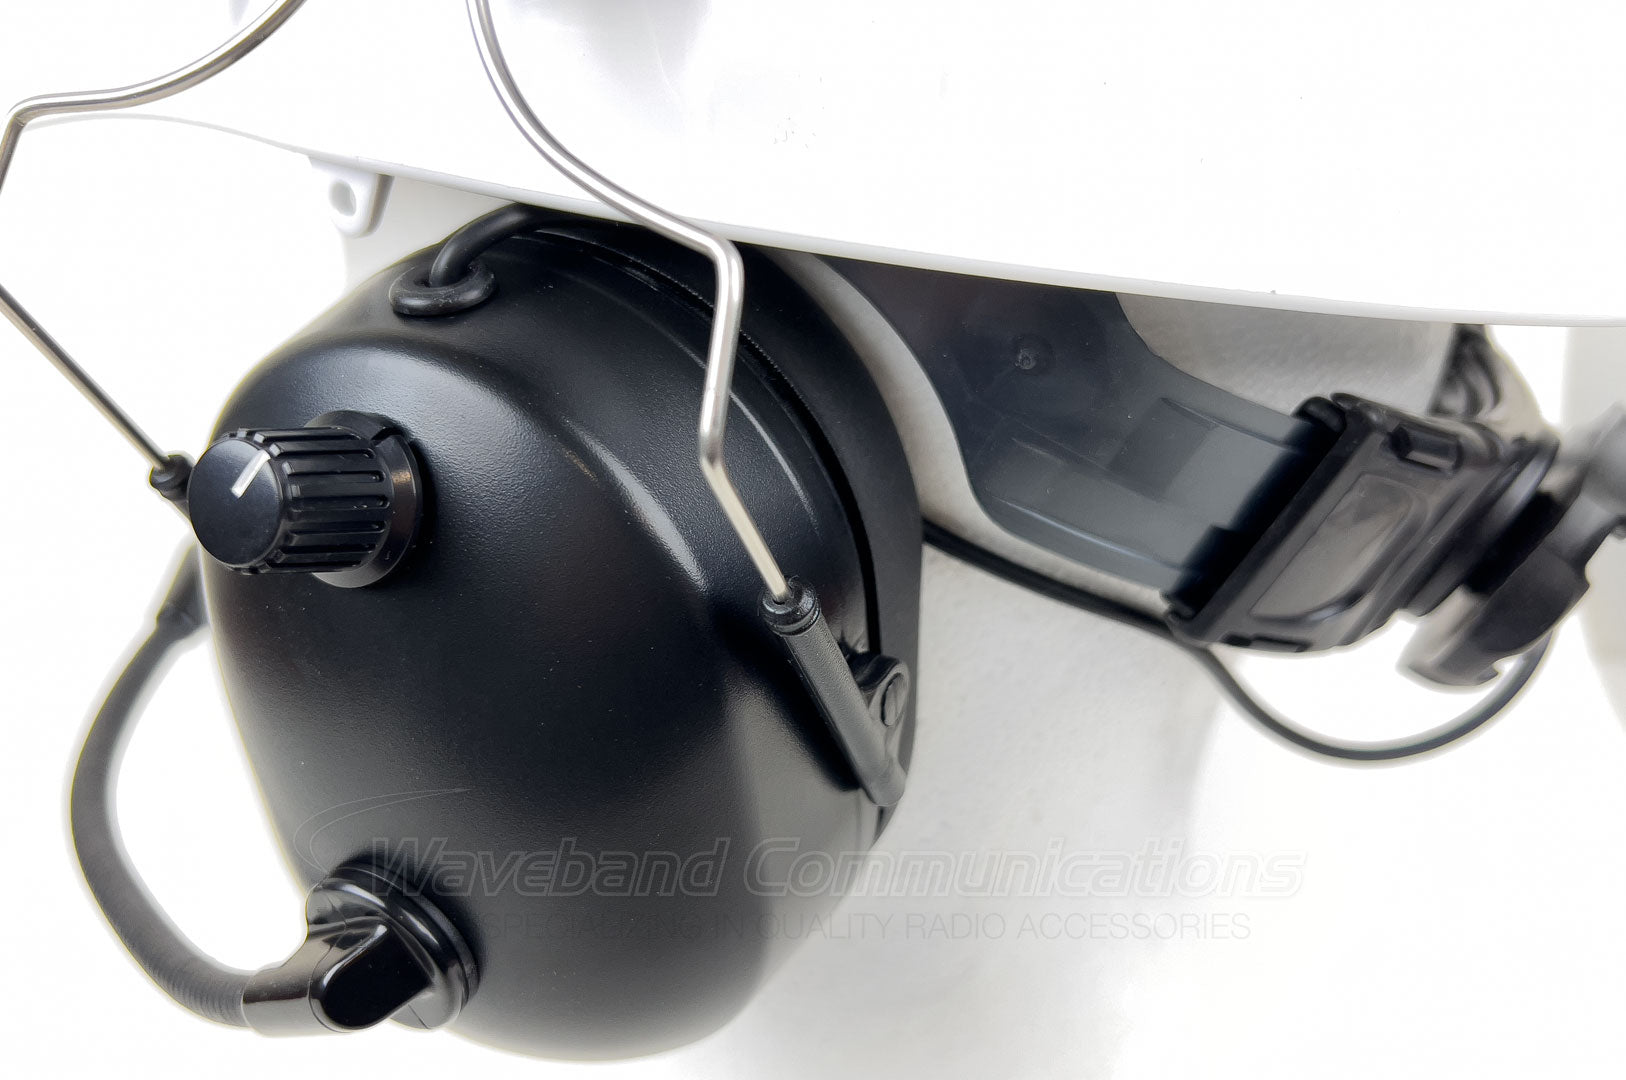 Heavy Duty Noise Annellering Headset met hardhat -bijlage